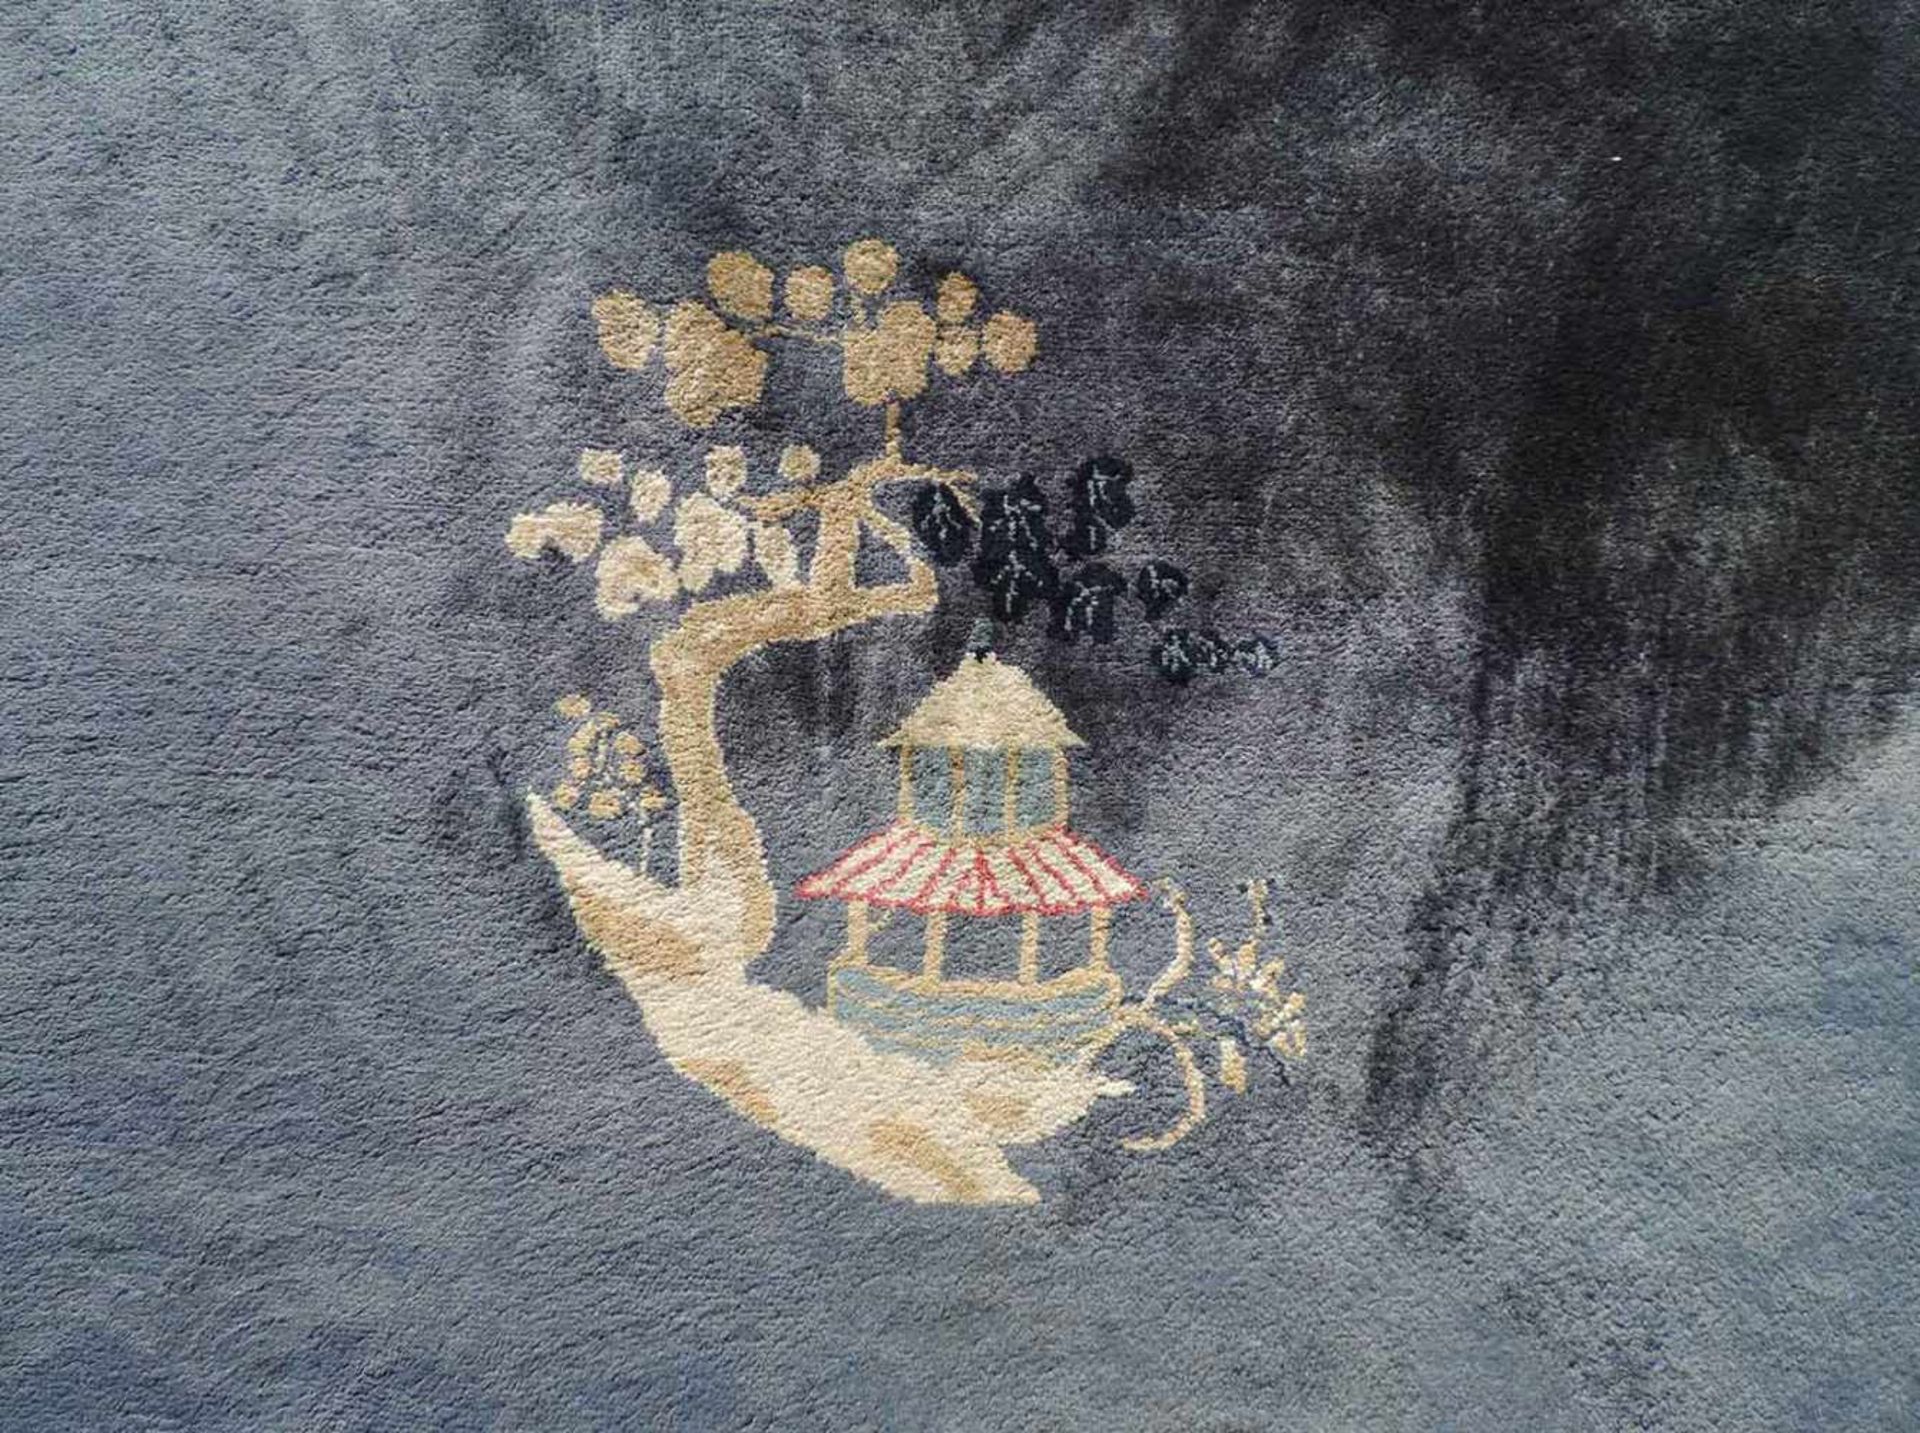 Peking Teppich. China. Antik. Um 1920 361 cm x 267 cm. Handgeknüpft. Mancesterwolle auf Baumwolle. - Bild 4 aus 8